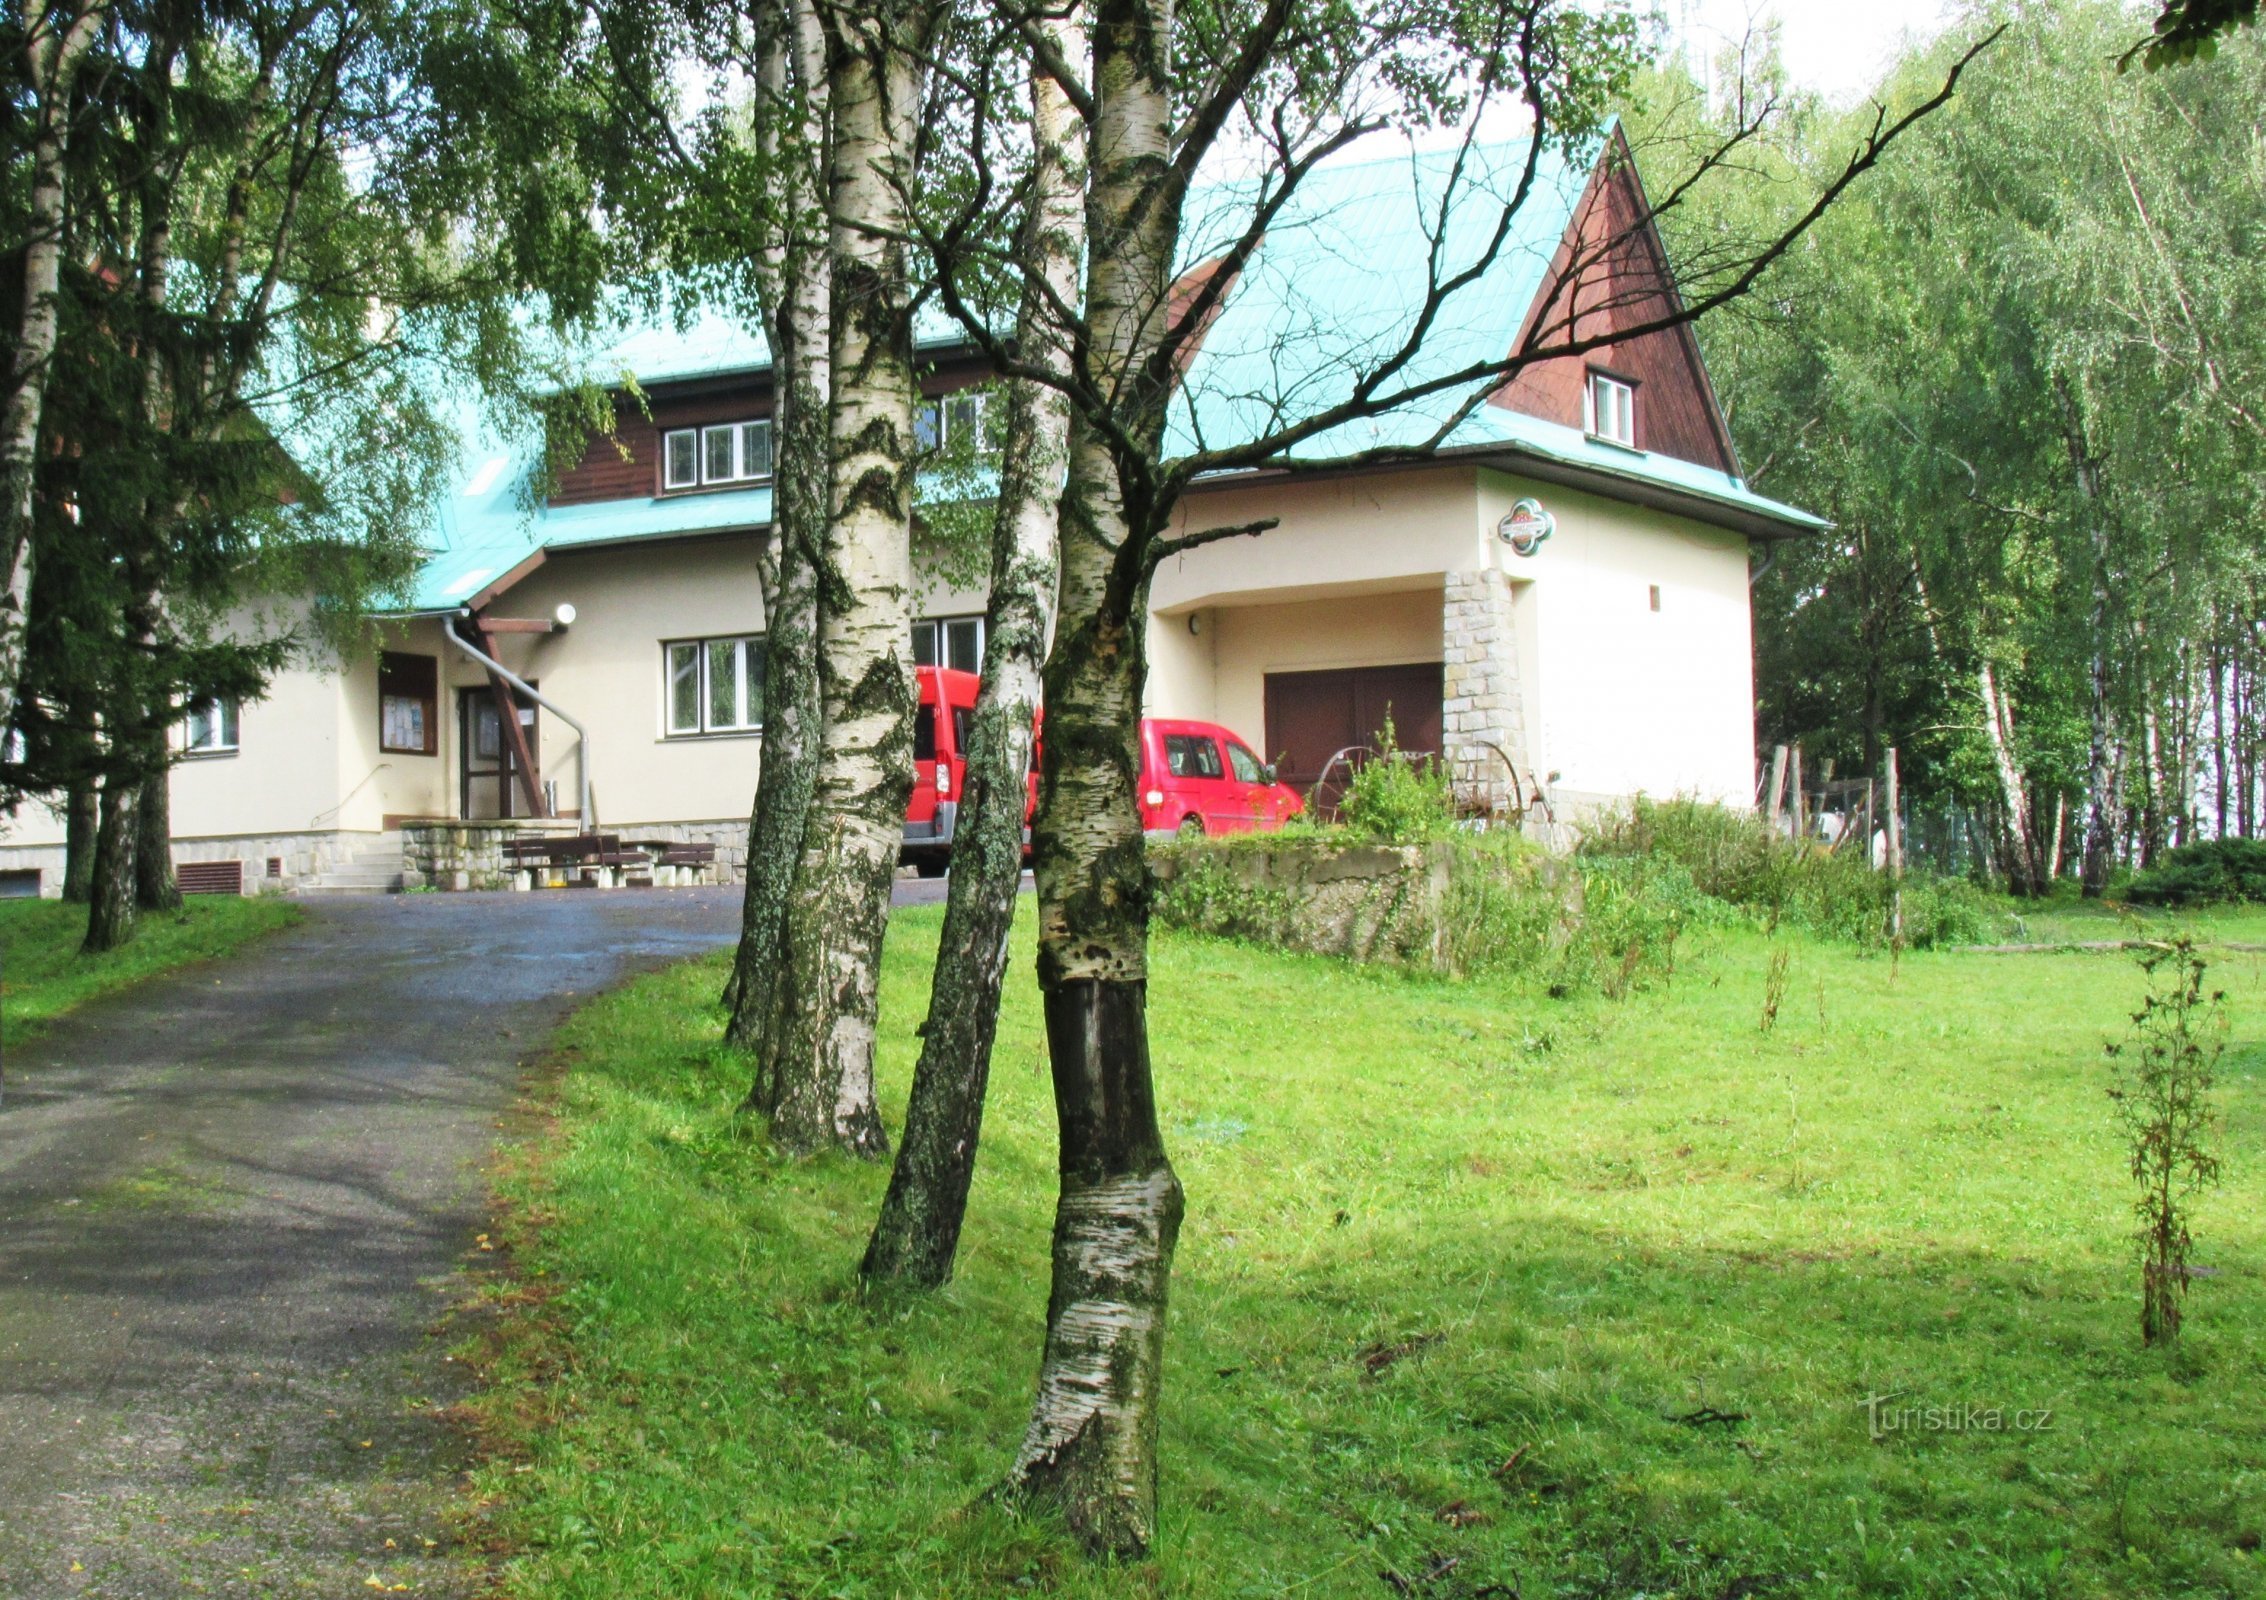 生态农场和住宿 Orlí vrch 在 Rejvíz 定居点